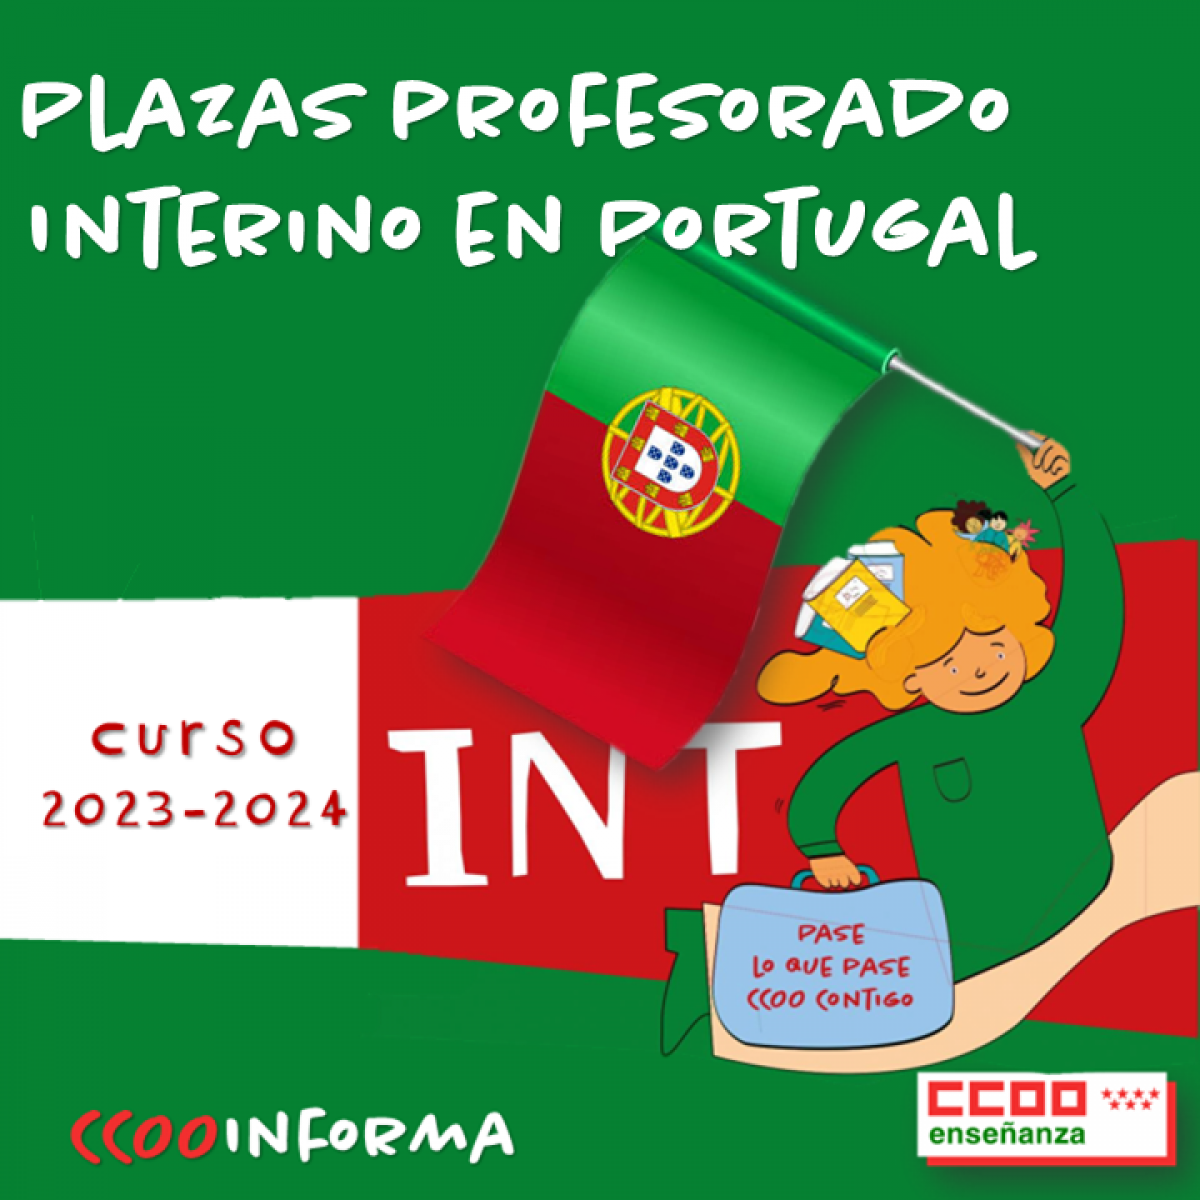 Plazas profesorado interino en Portugal